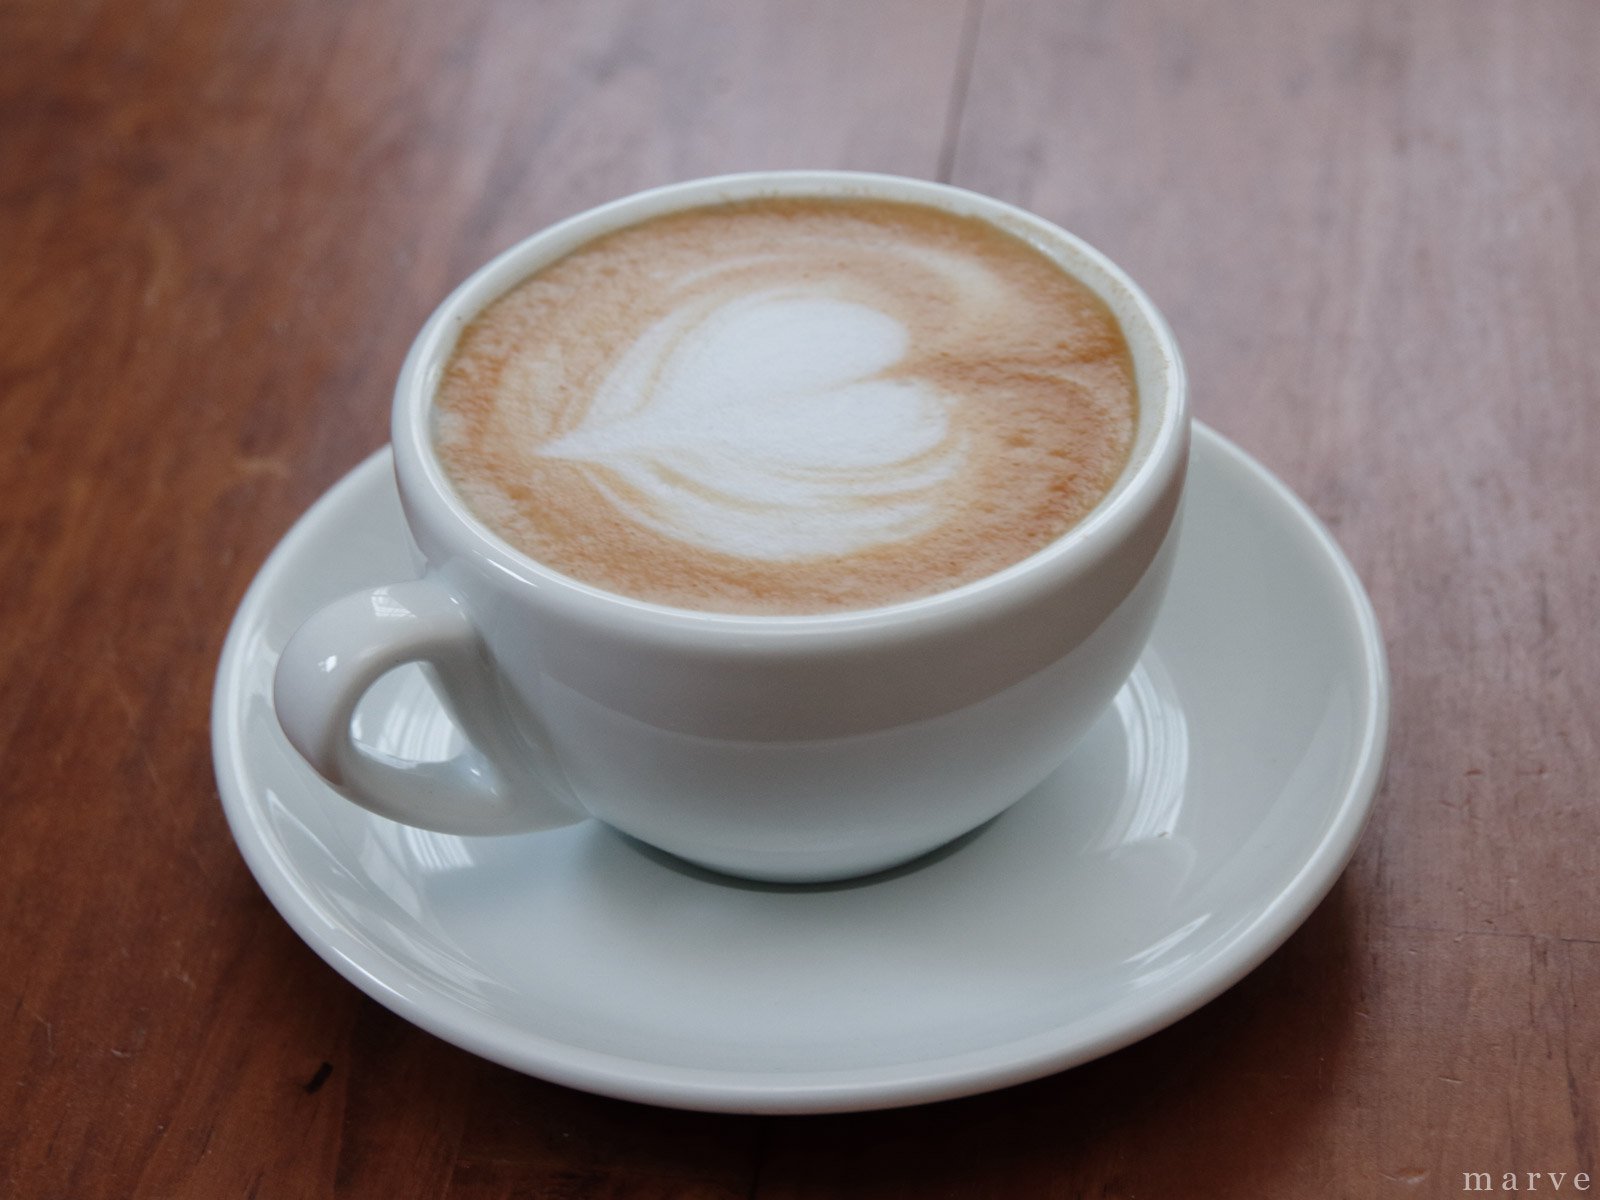 カフェラテカップ parerumo(パレルモ) - mp COFFee GEAR ONLINE SHOP （エムピーコーヒーギア）コーヒー ツールの専門ショップ